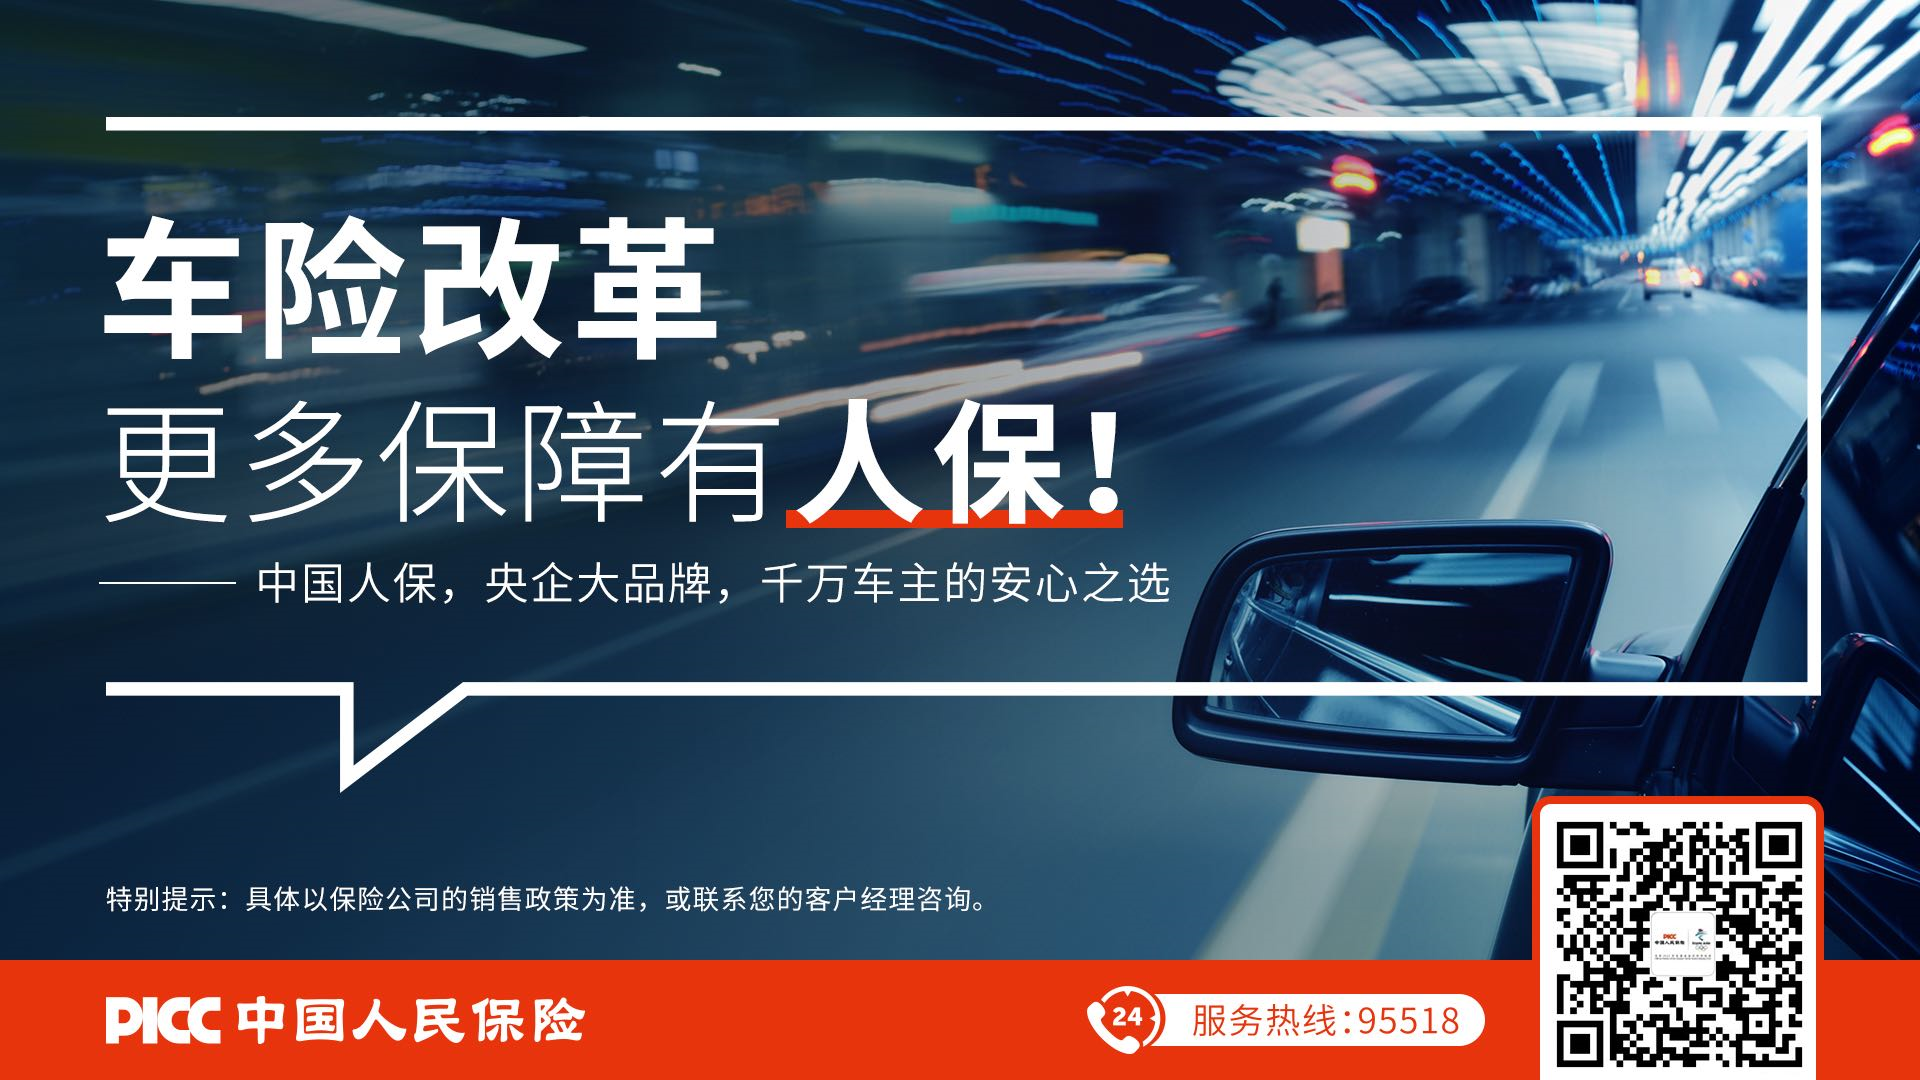 车险改革，服务是未来制胜的关键 ——深圳人保财险顺利开启车险综合改革工作  